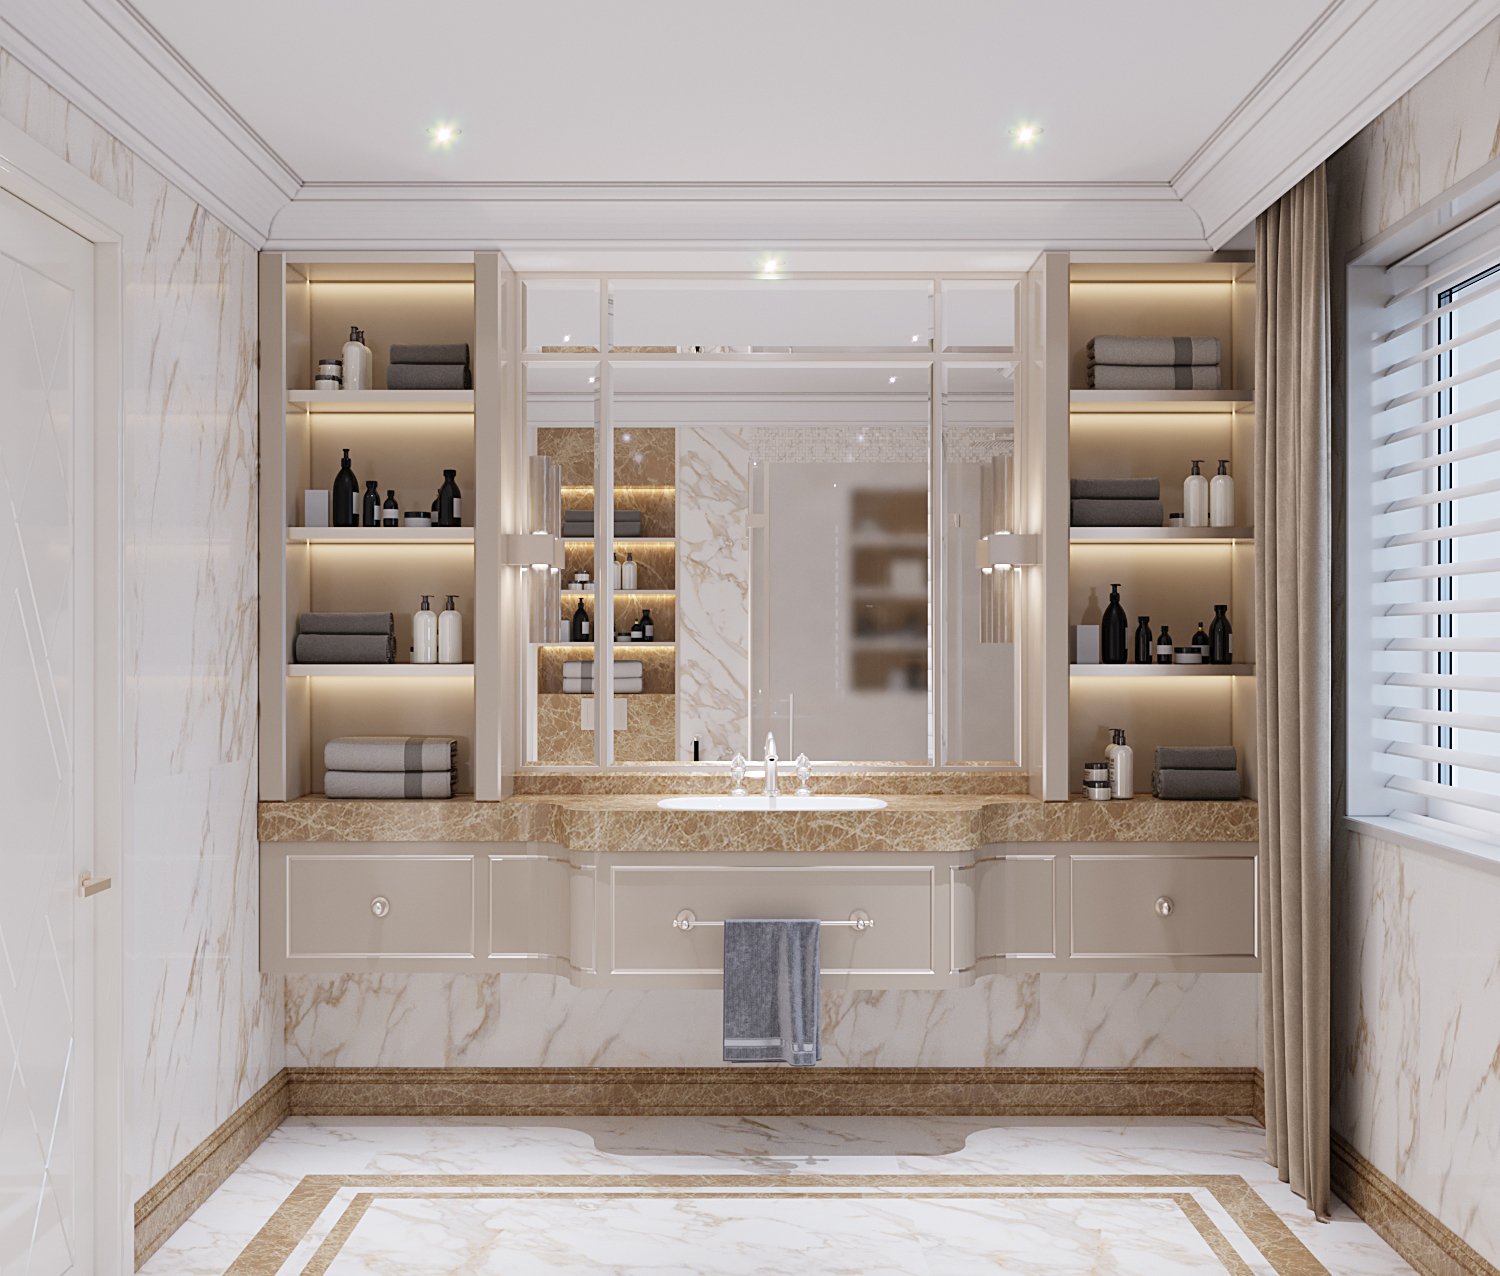 мрамор в декоре, мраморная ванная, мраморный санузел, мраморный пол, мрармор в ванной, дизайн ванной, интерьер ванной, студия дизайна, ванная комната дизайн